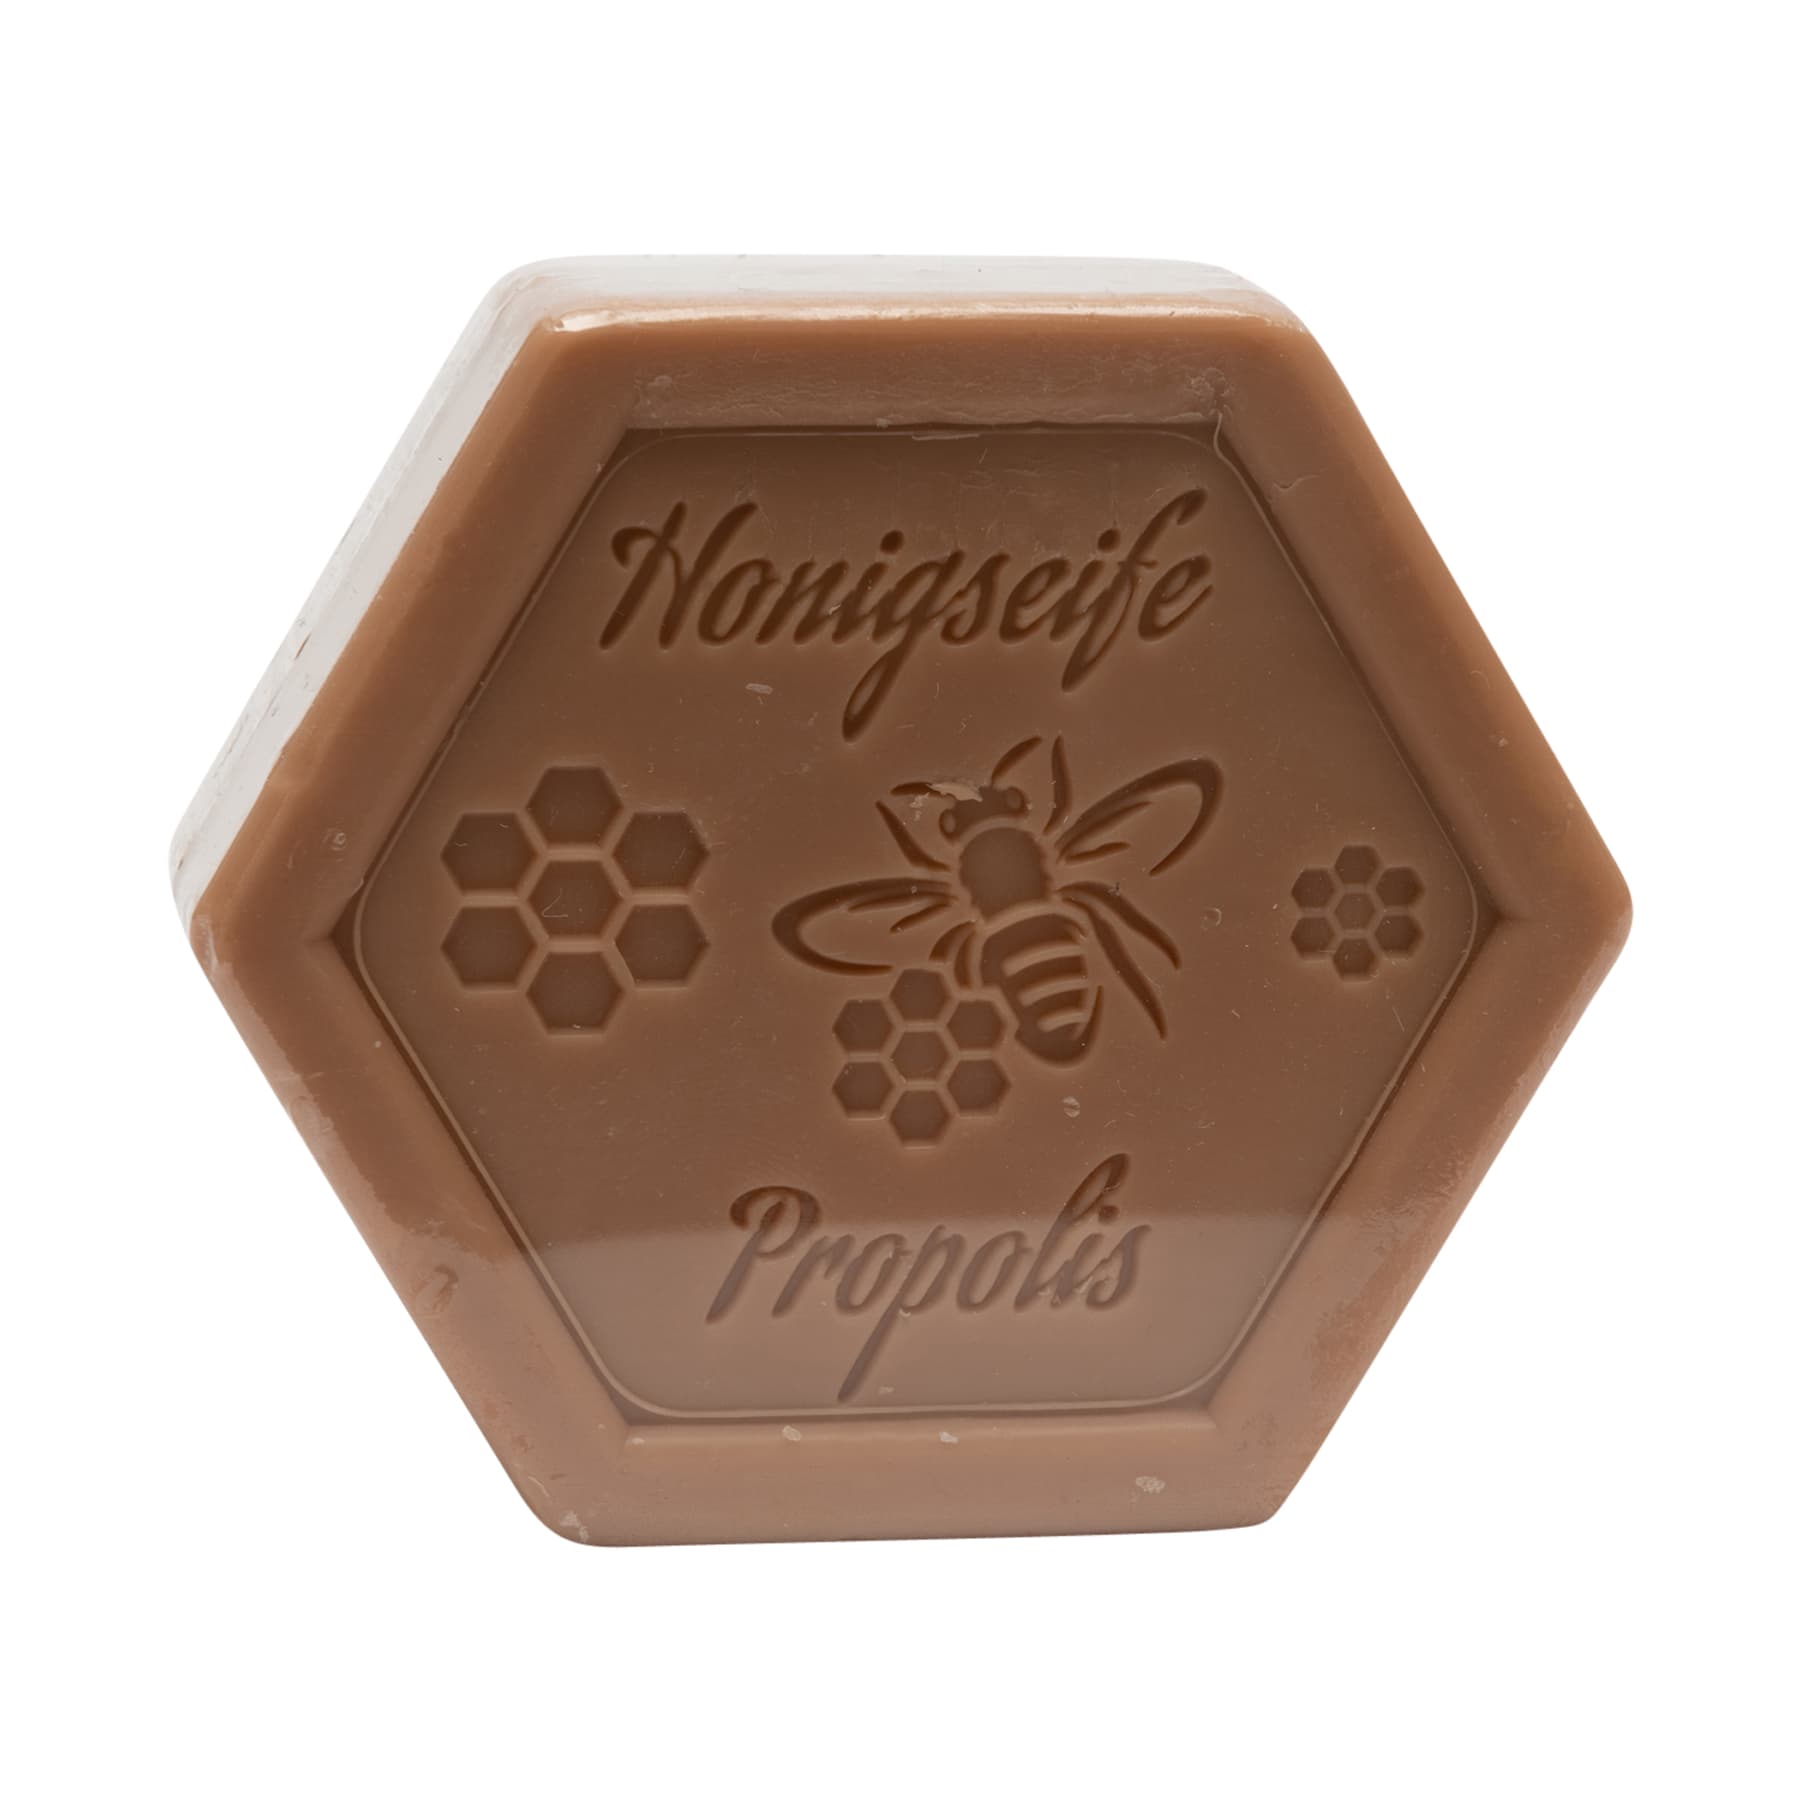 Honigseife mit Propolis100 g in Sechseckform, foliert, mit dem beigelegten Etikett